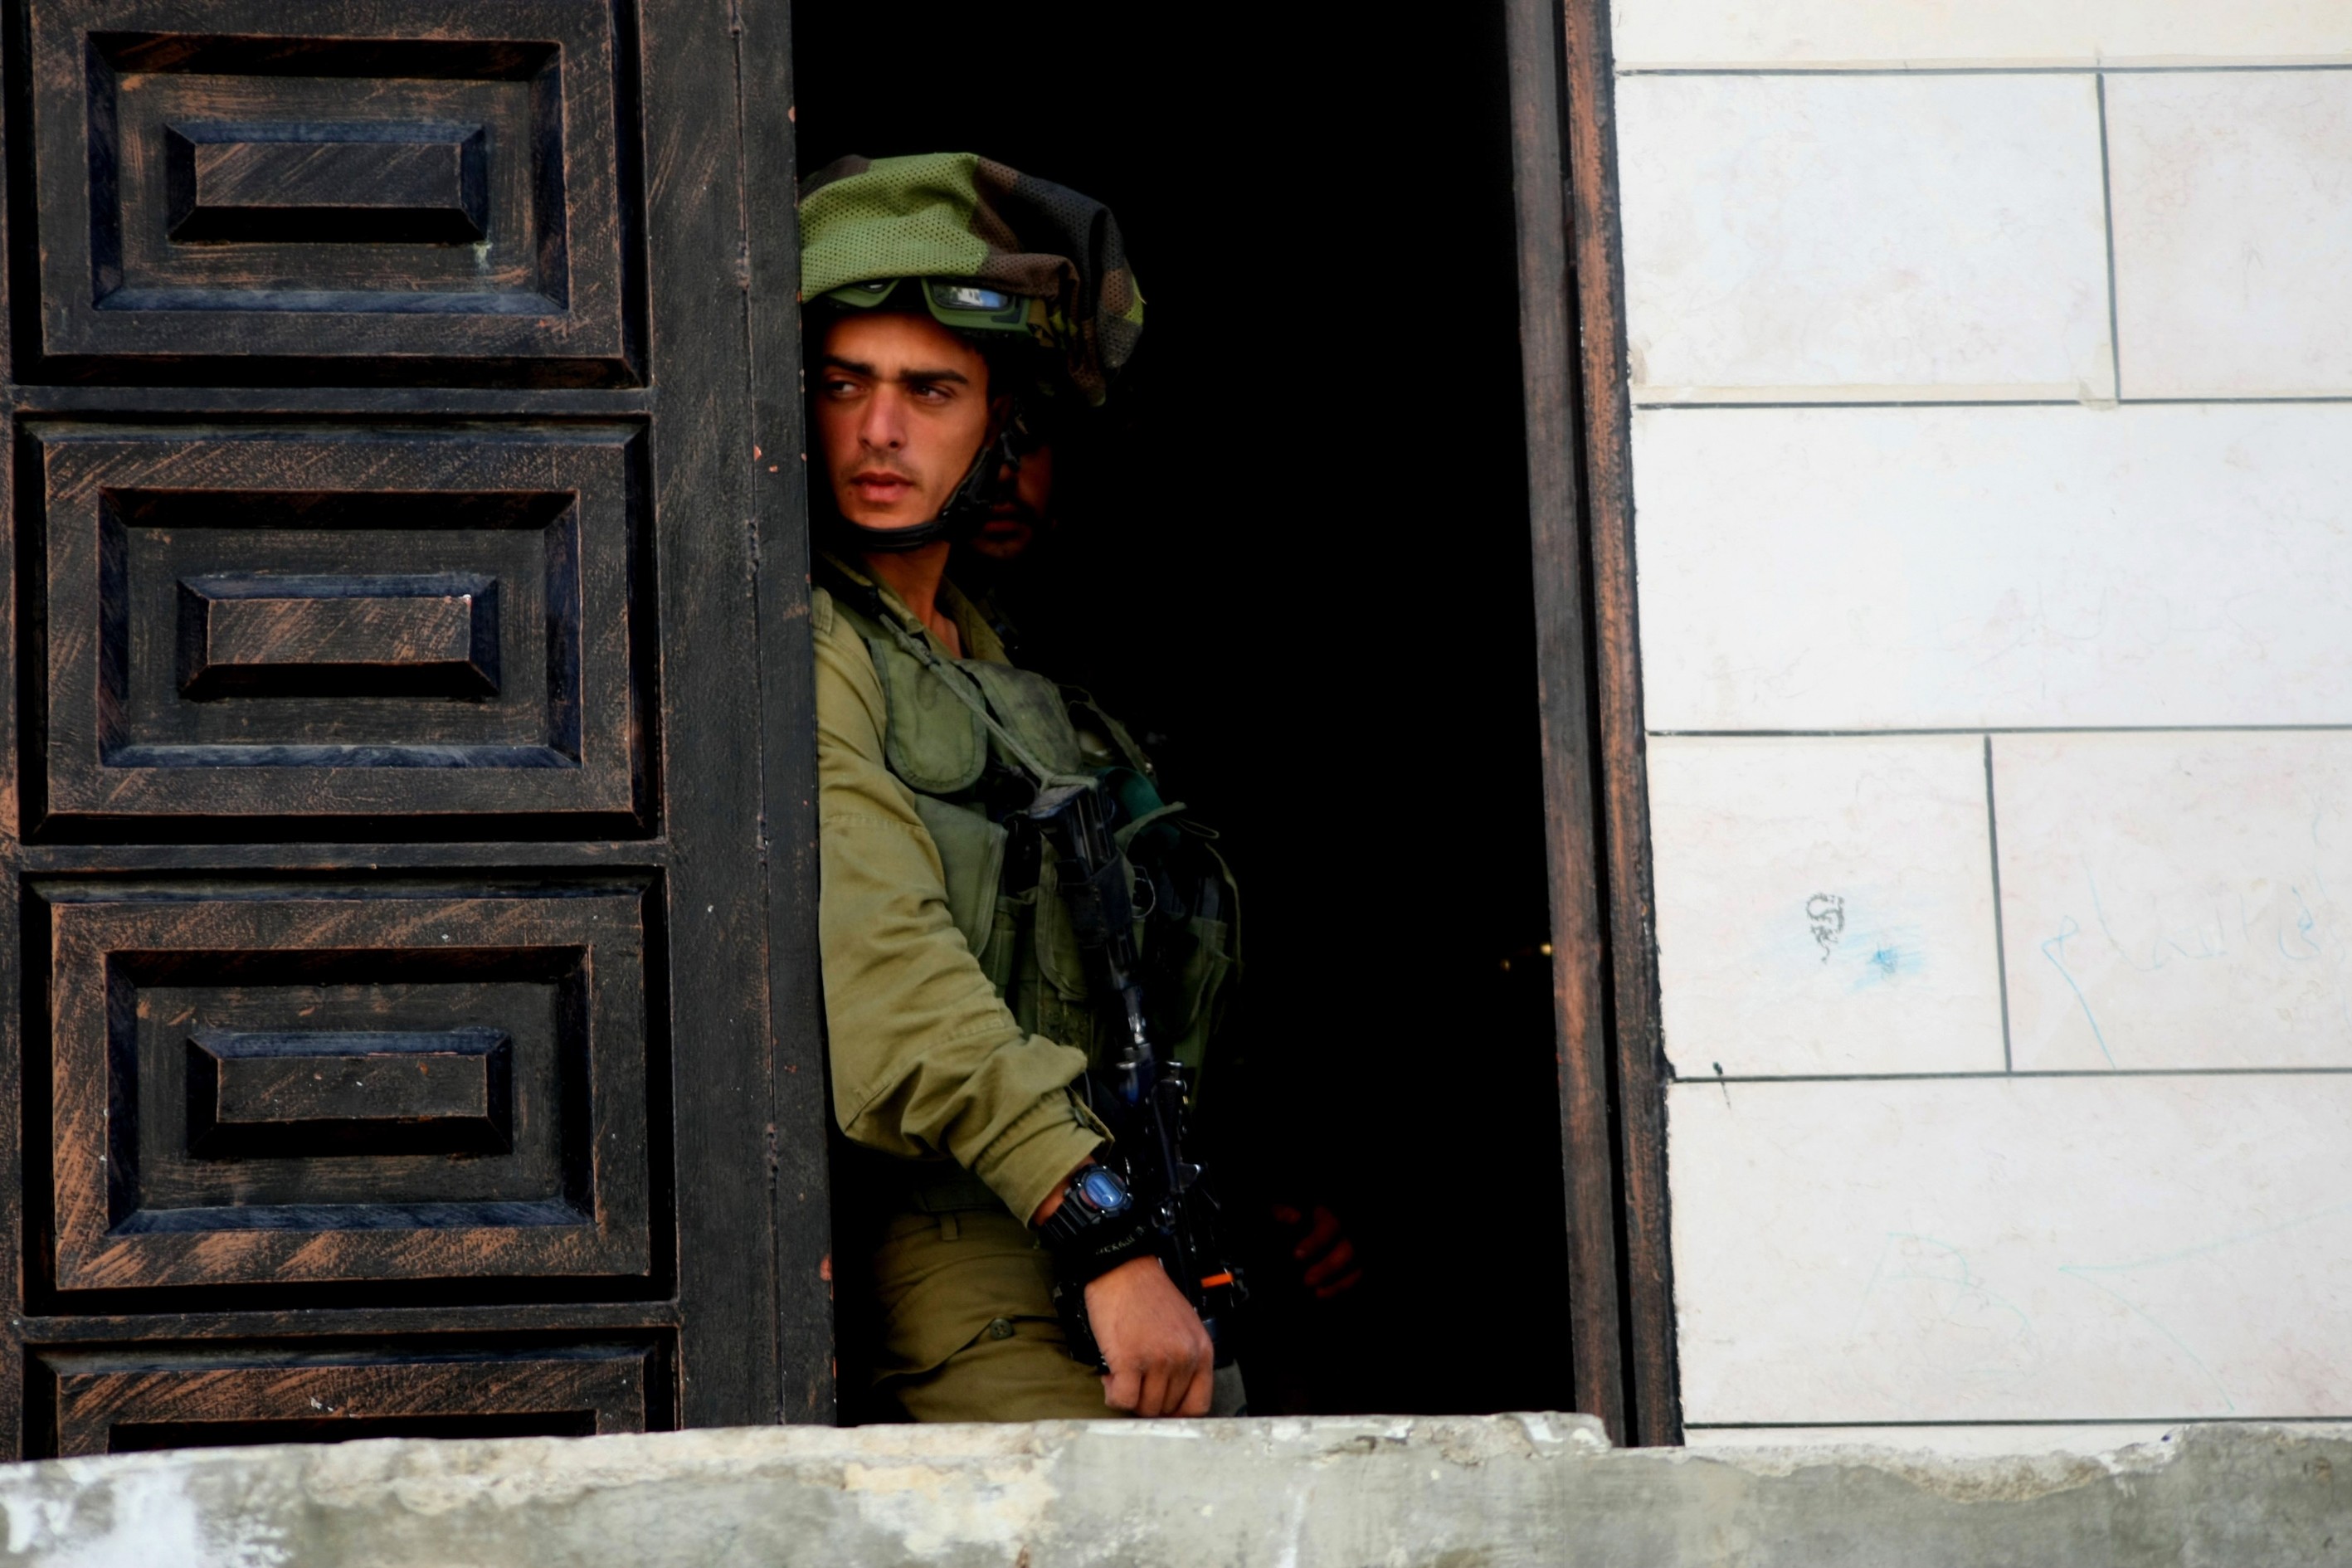 (فجراً) جيش الاحتلال يعتقل 40 قياديا وناشطا من حركة حماس في الضفة الغربية
